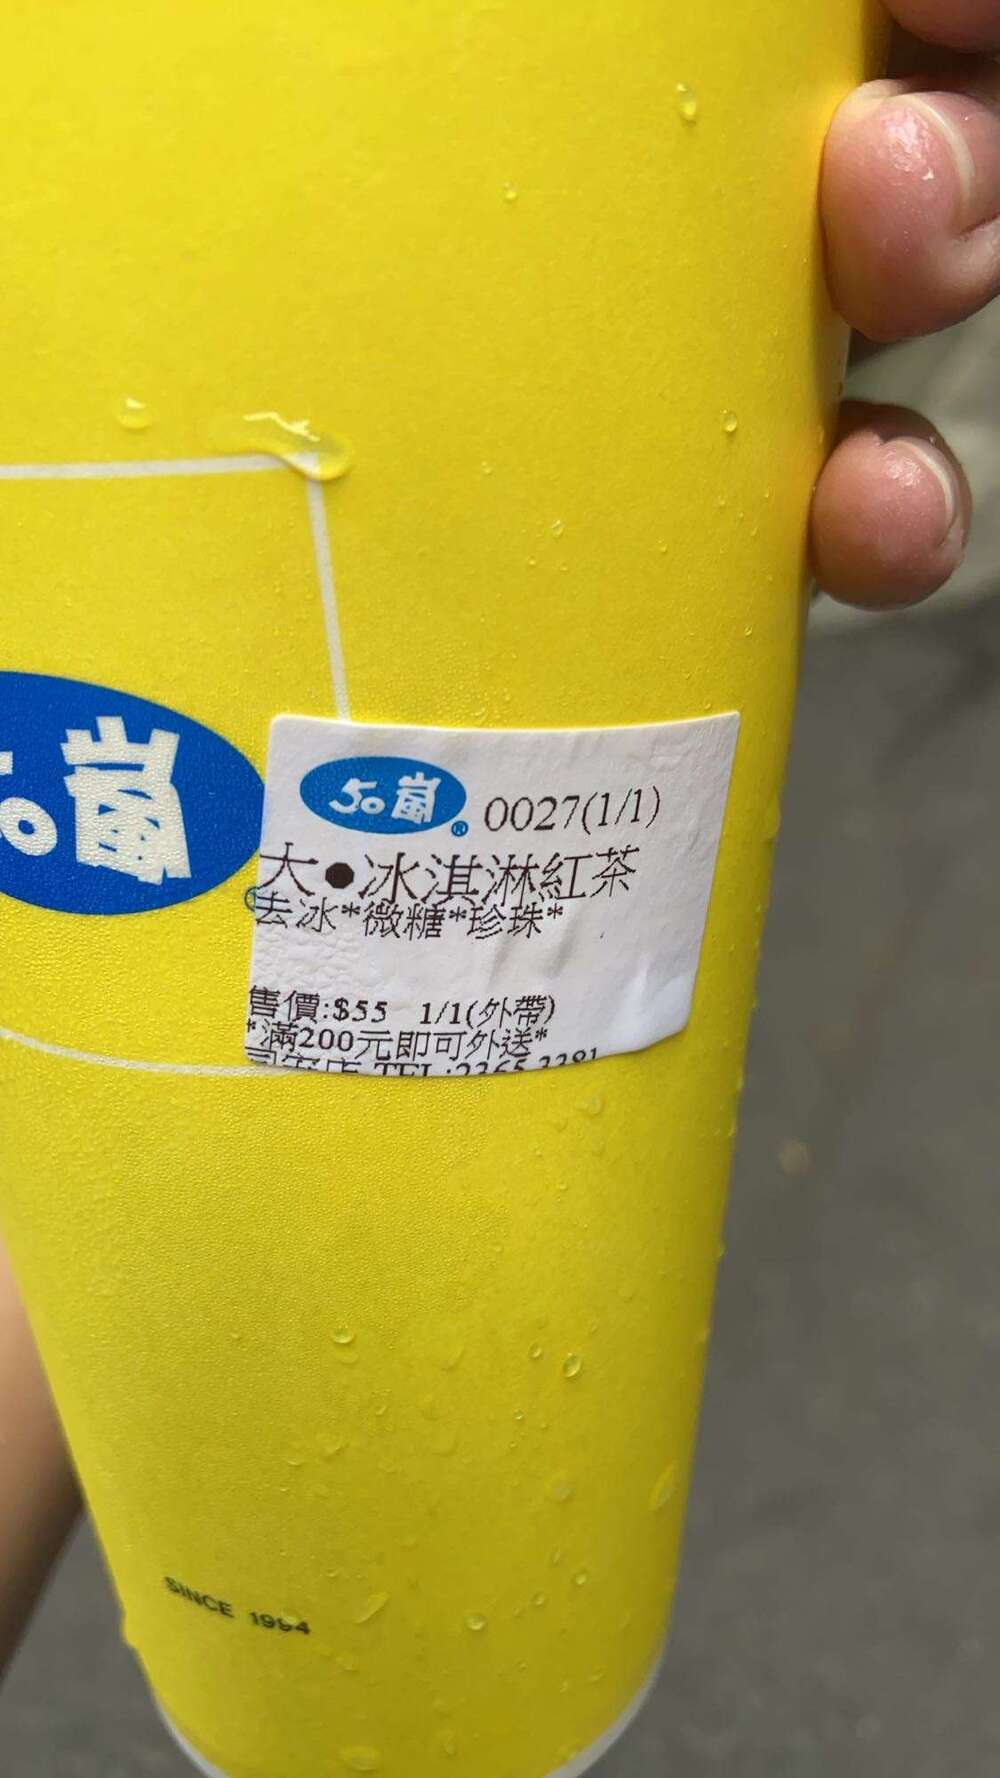 原PO開心買到55元的珍珠紅茶+冰淇淋（圖/翻攝自Dcard）